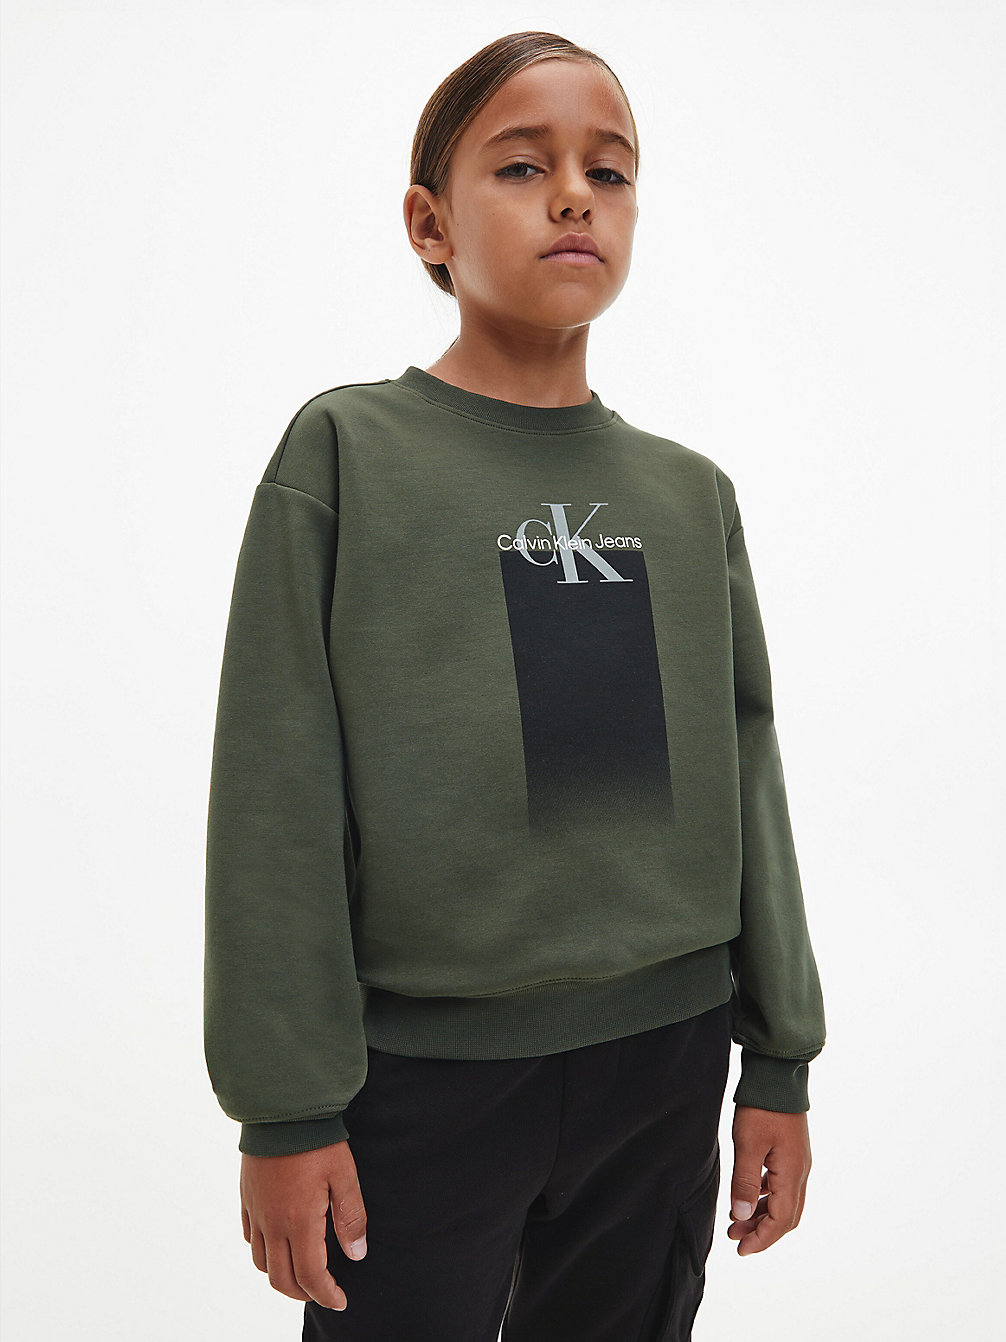 DEEP DEPTHS > Logo-Sweatshirt > undefined boys - Calvin Klein